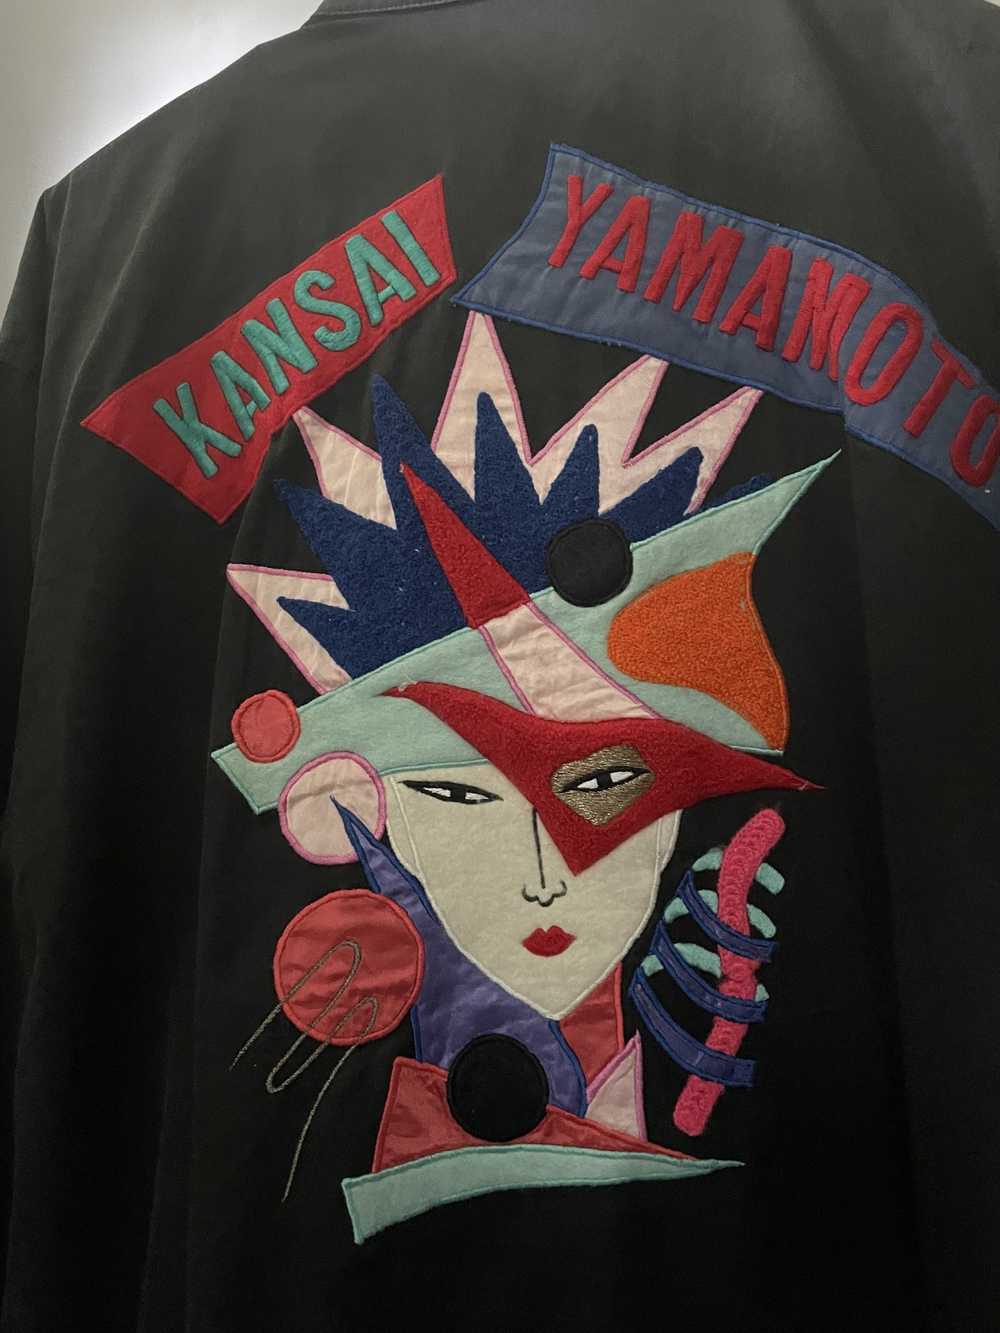 Kansai Yamamoto Kansai Yamamoto Patch Jacket - image 2